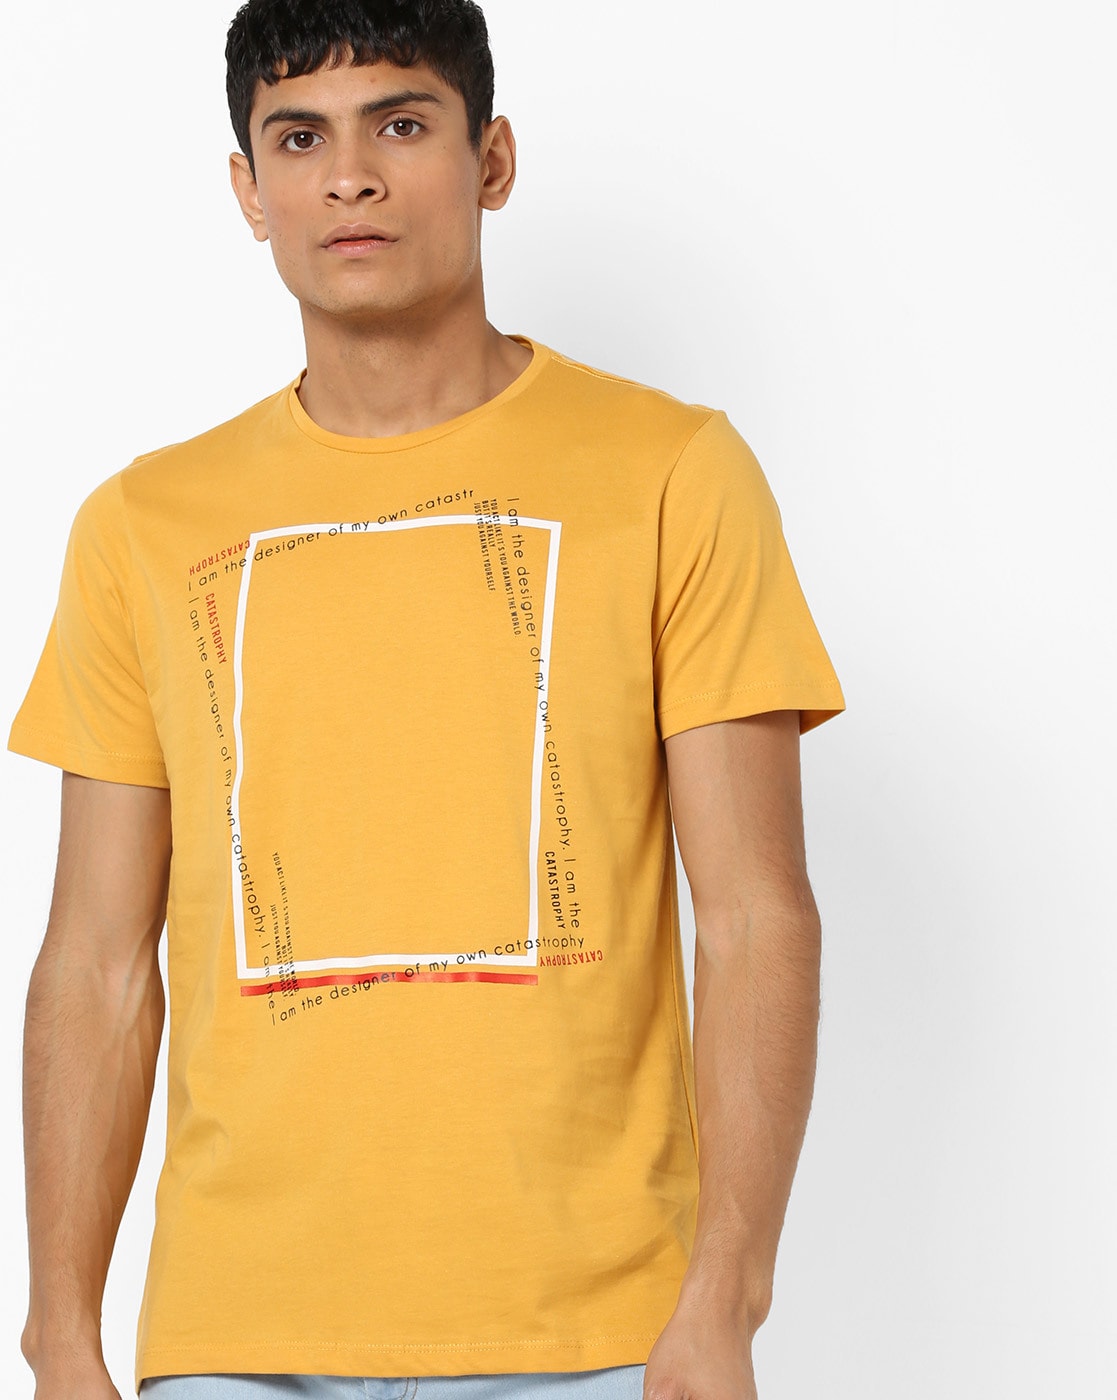 mango t shirts online india